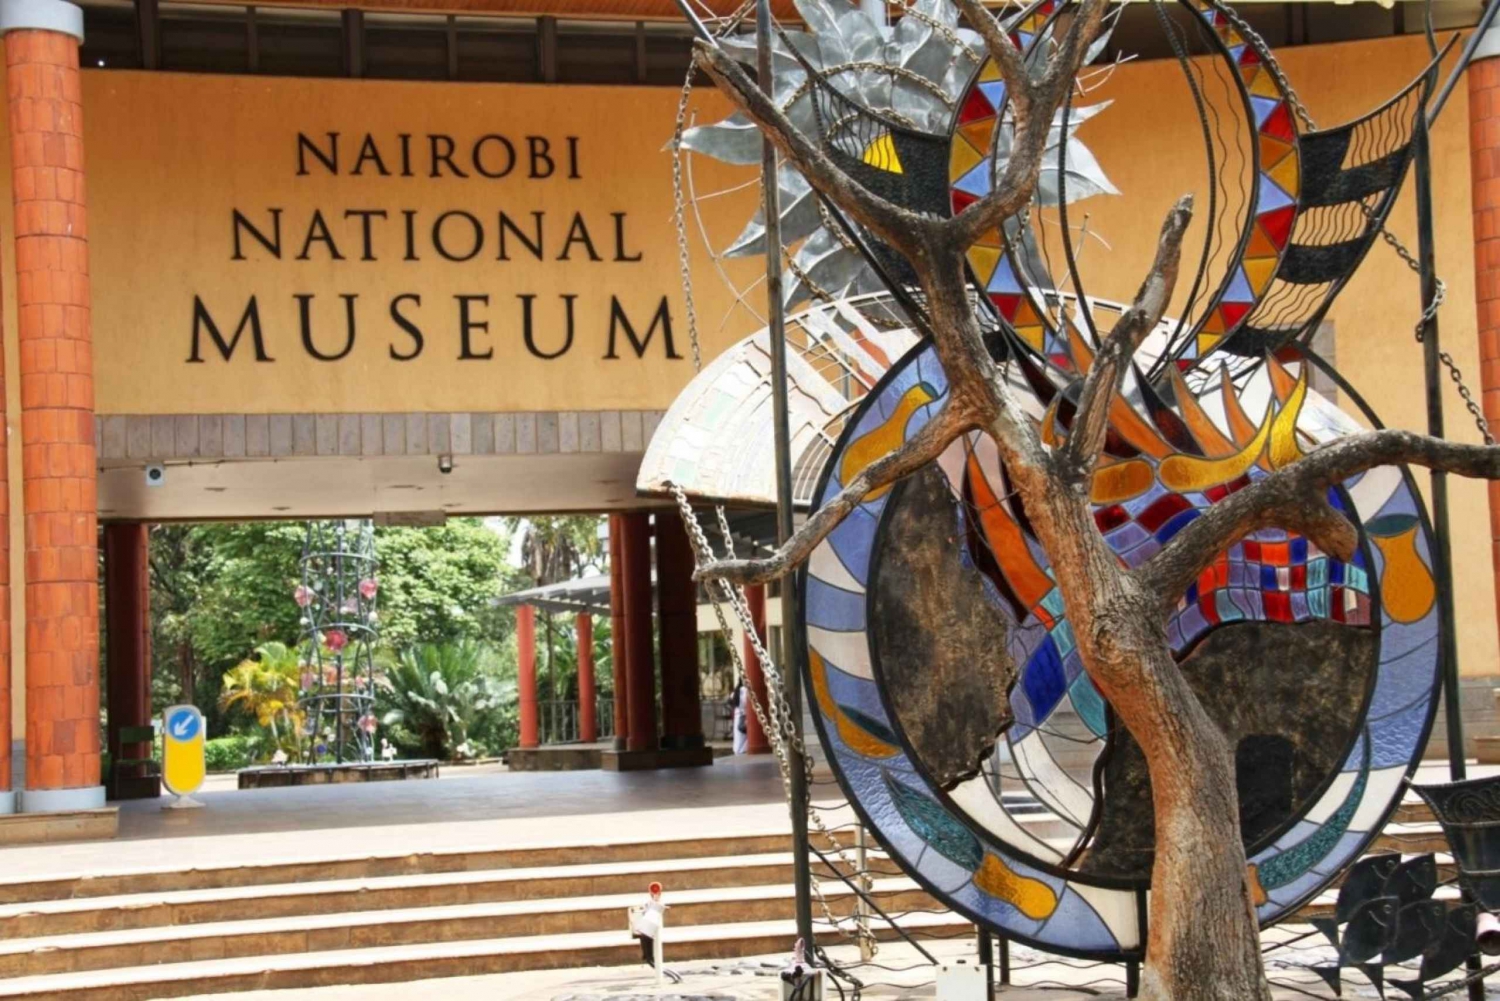 Nairobi Airport Layover: Nairobi National Museum Tour